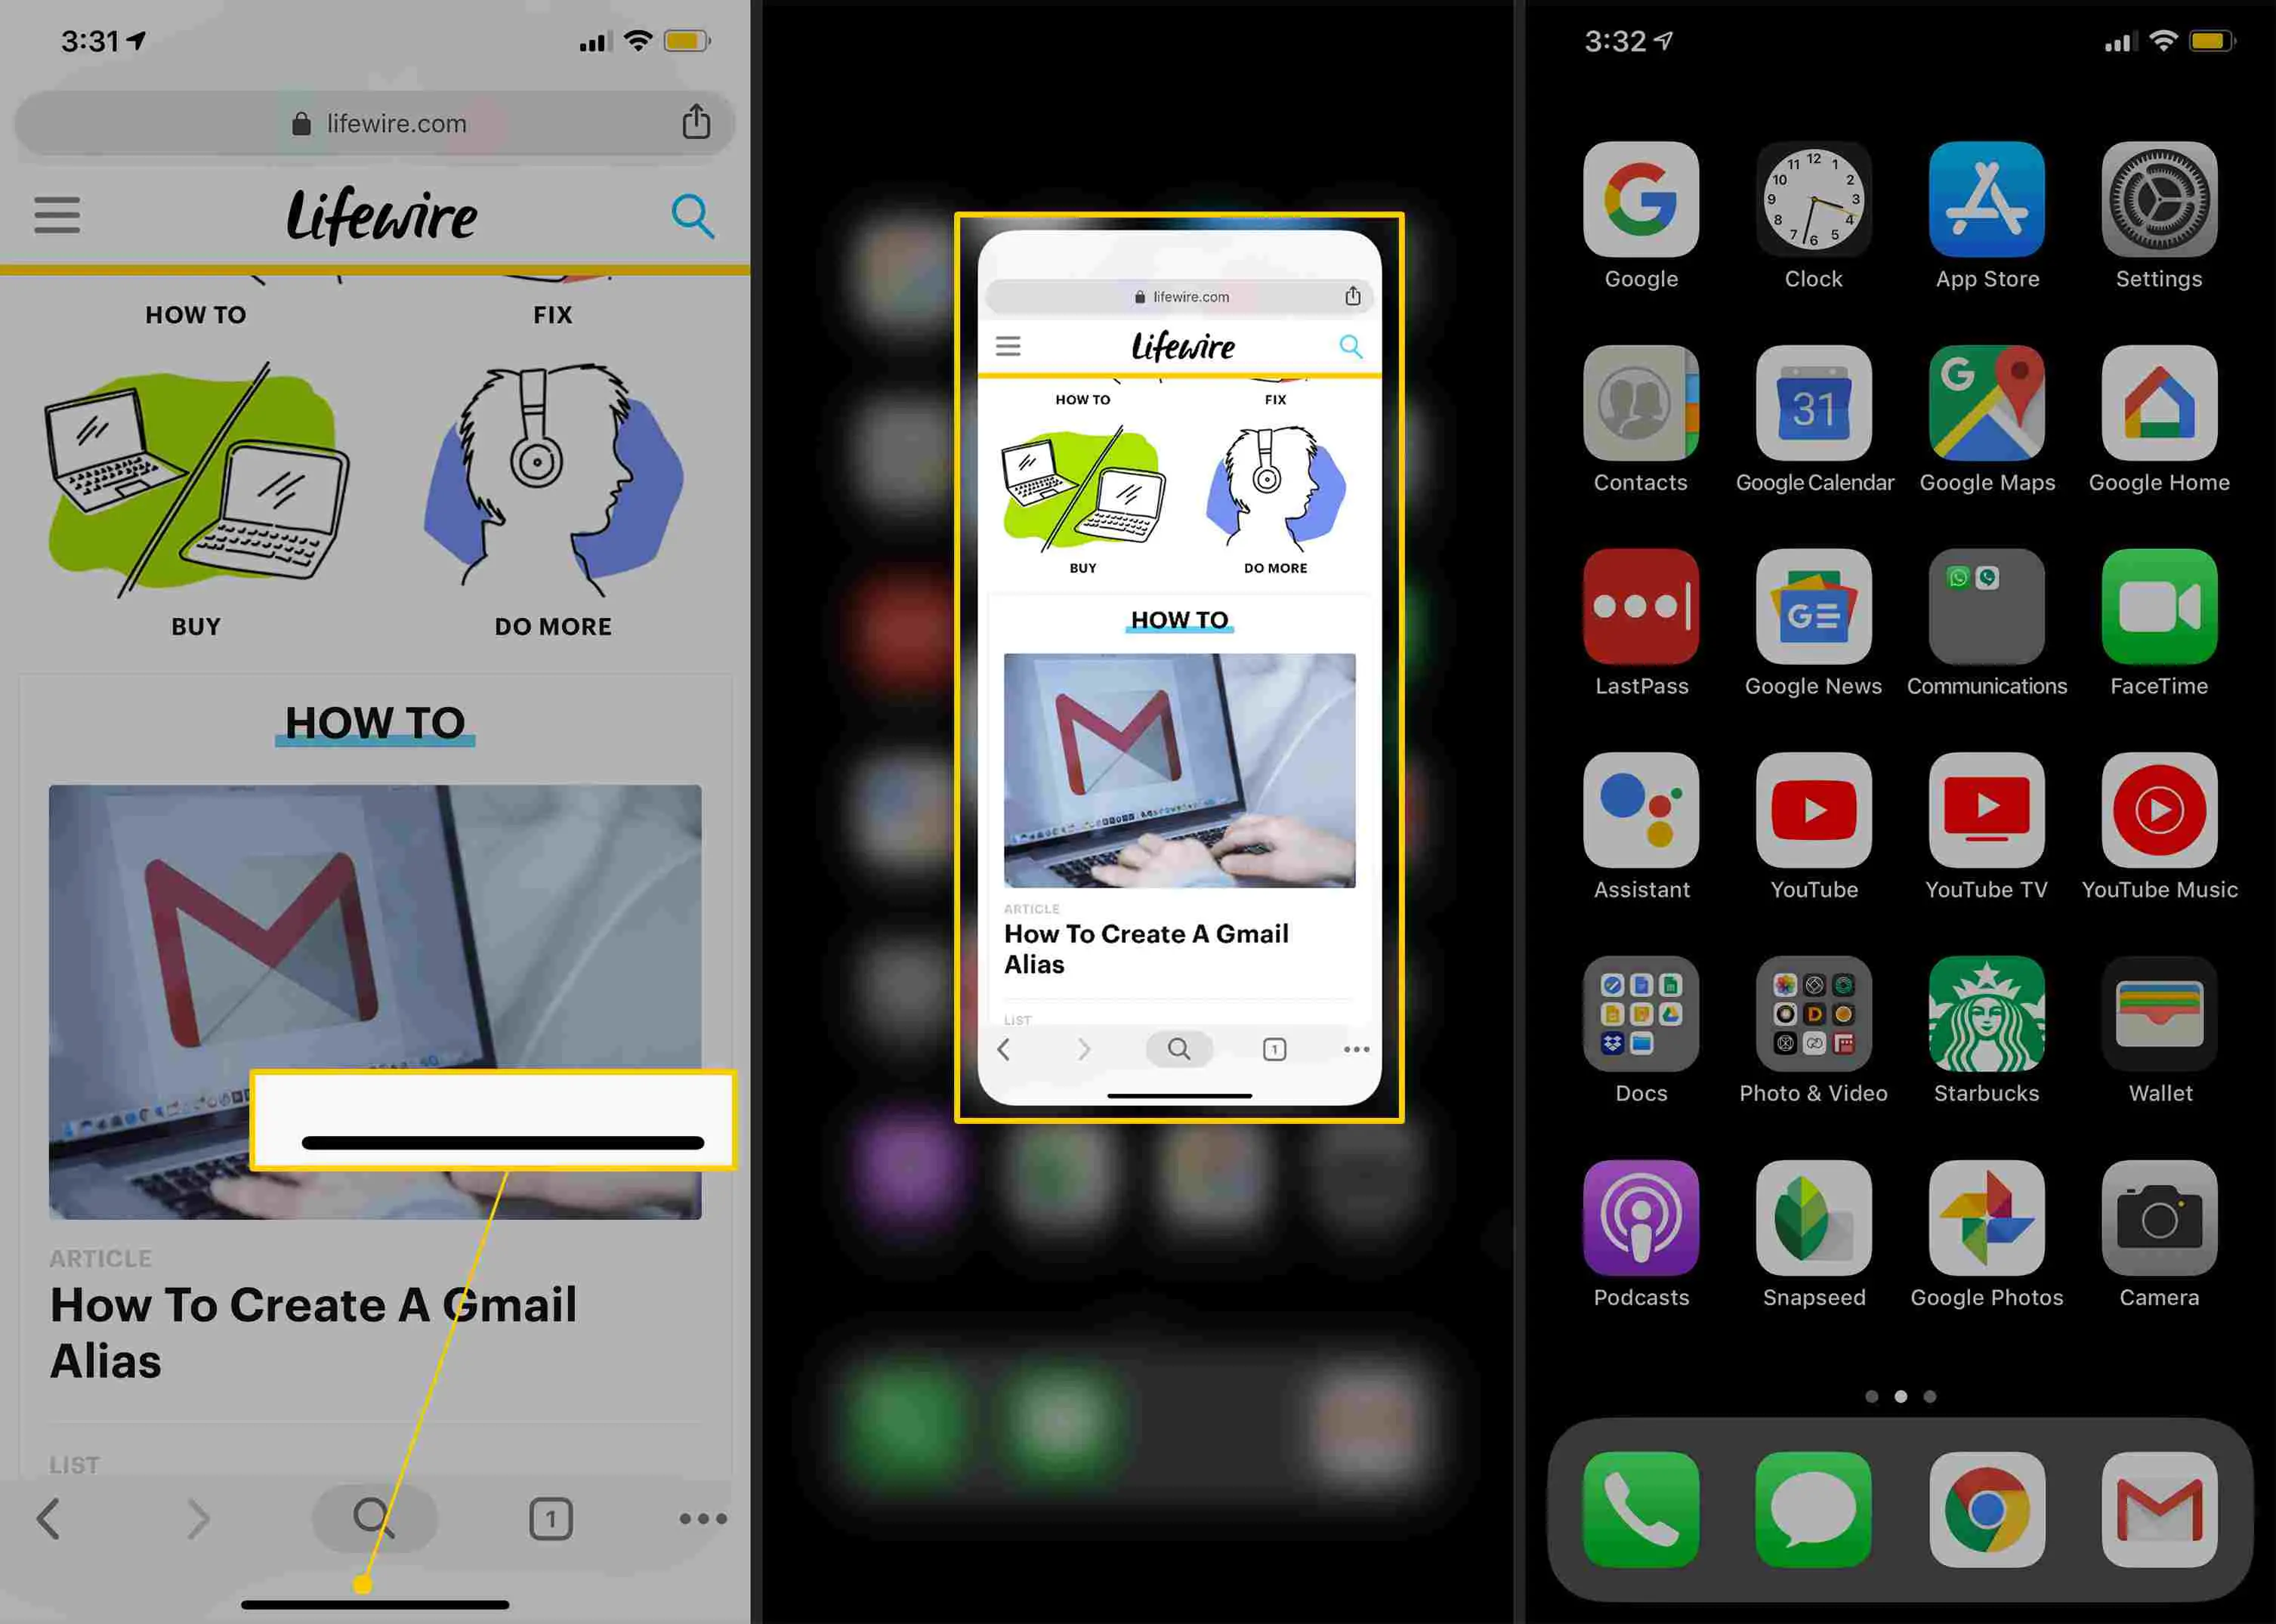 Barra preta deslizante para cima, tela provisória, tela inicial no iPhone X